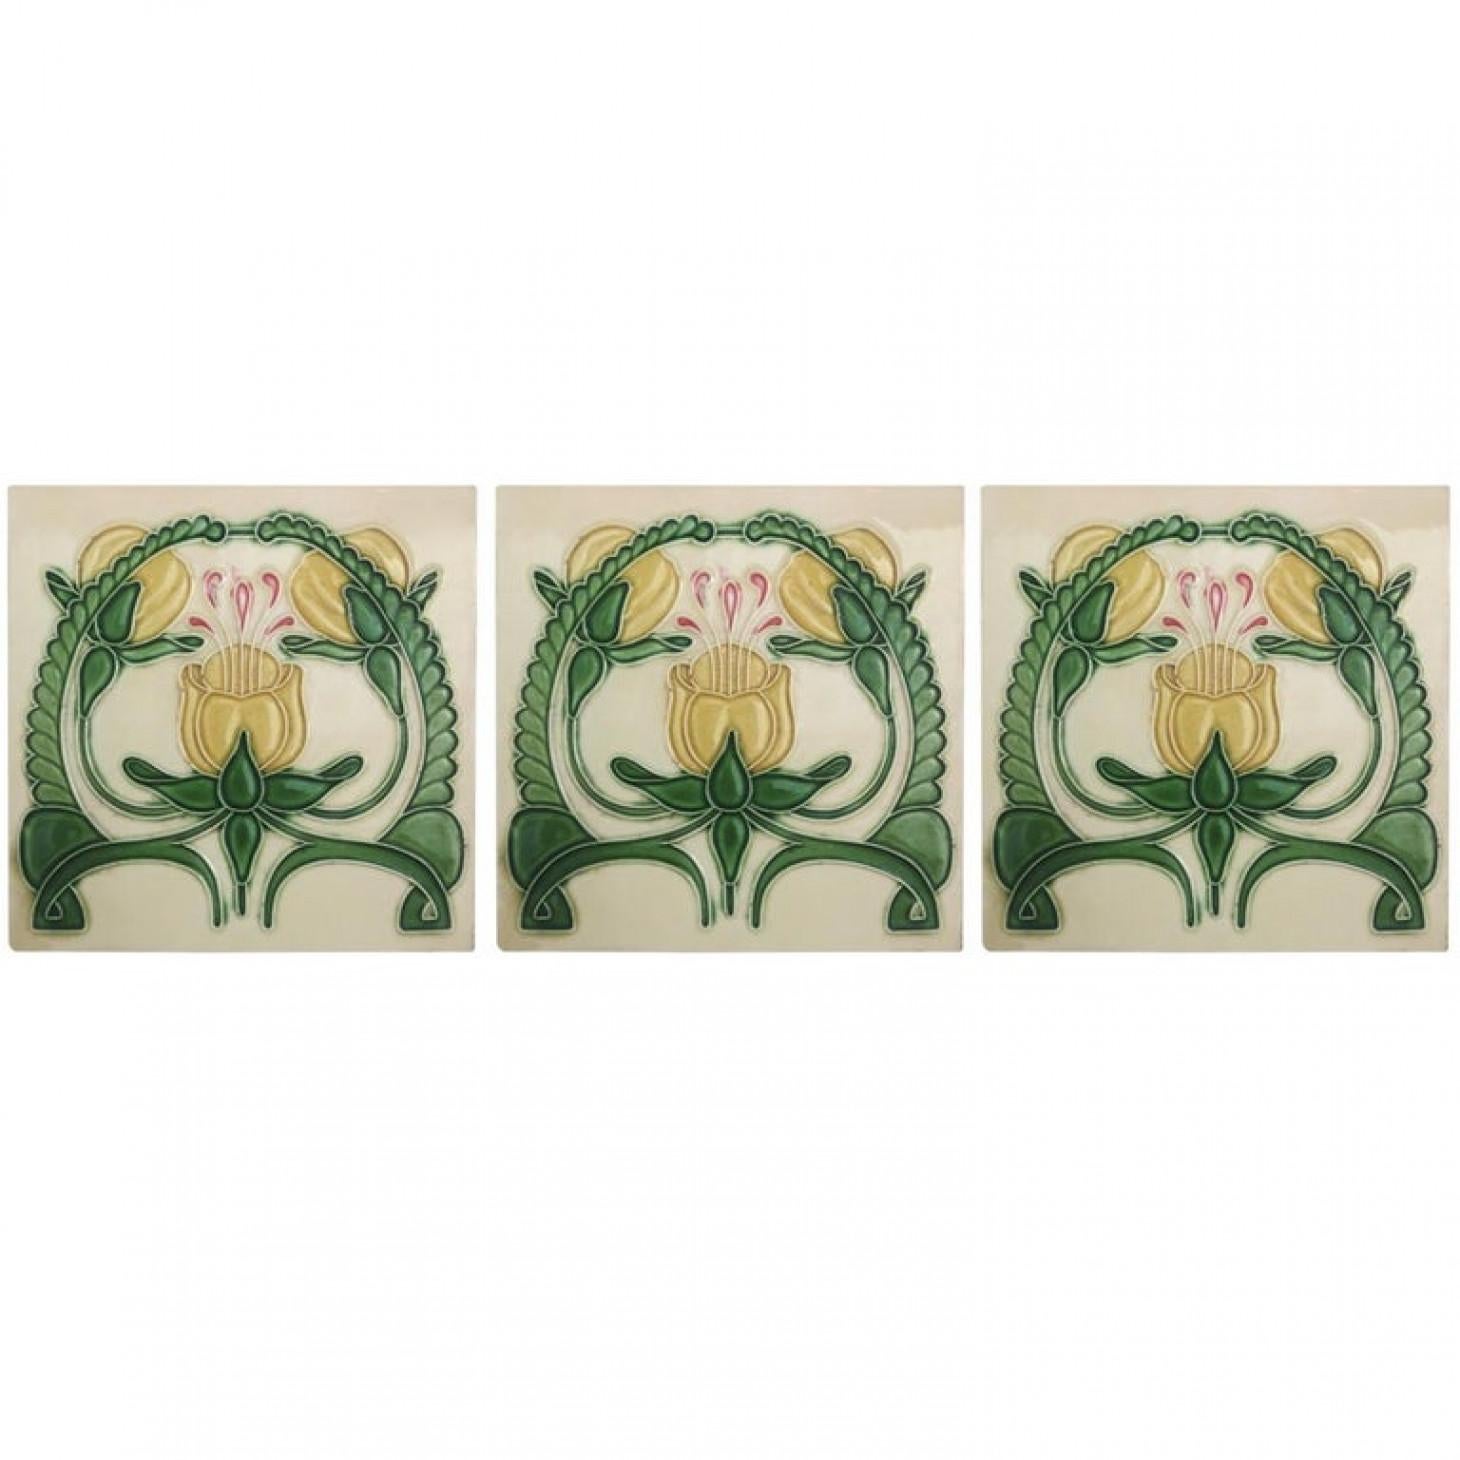 Vernissé 1 des 20 carreaux en relief émaillés Art nouveau, Maison Helman, Céramiques d'Art en vente